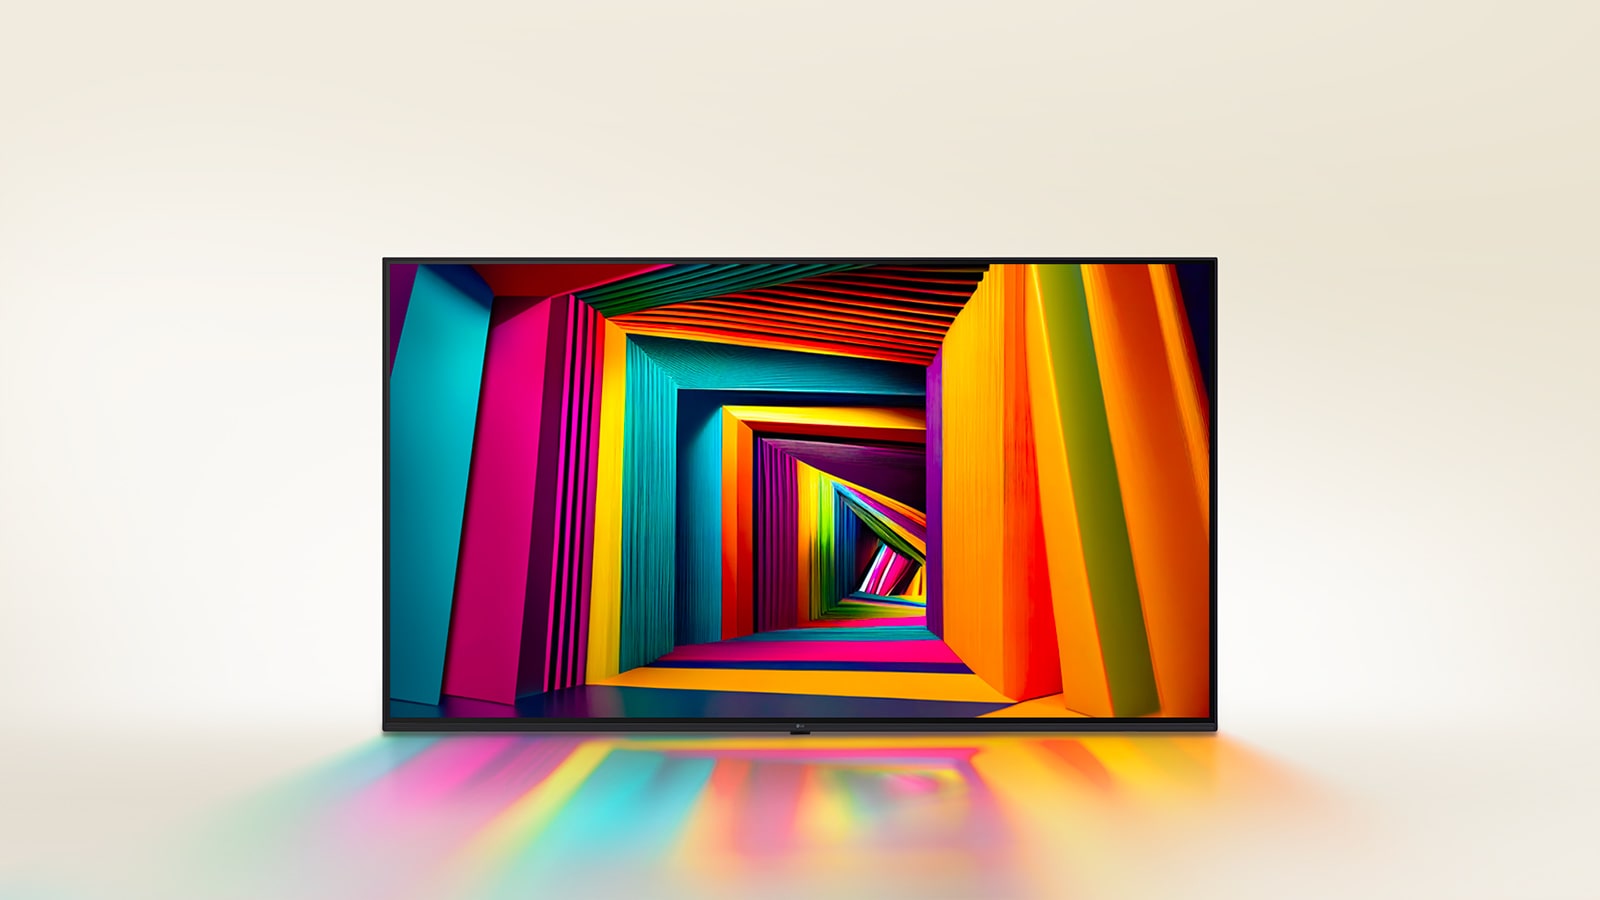 На экране телевизора LG TV появляется яркий цветной туннель квадратной формы, постепенно сужающийся к задней части.